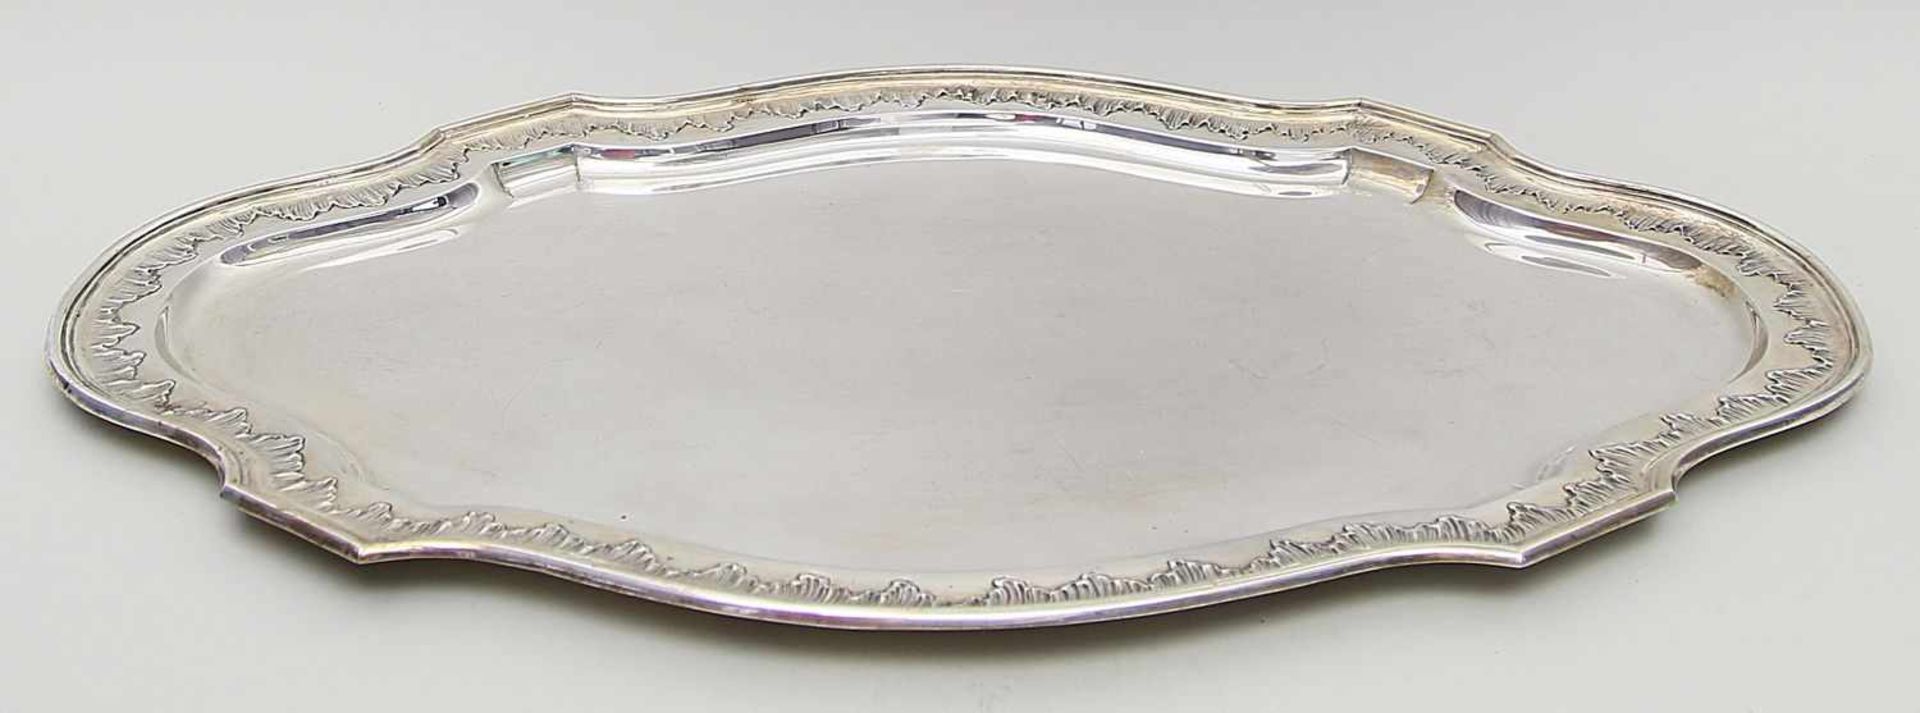 Großes Tablett im klassizistischen Stil.13 Lot Silber, 4.924 g. Mehrpassig mit ovalem Querschnitt.